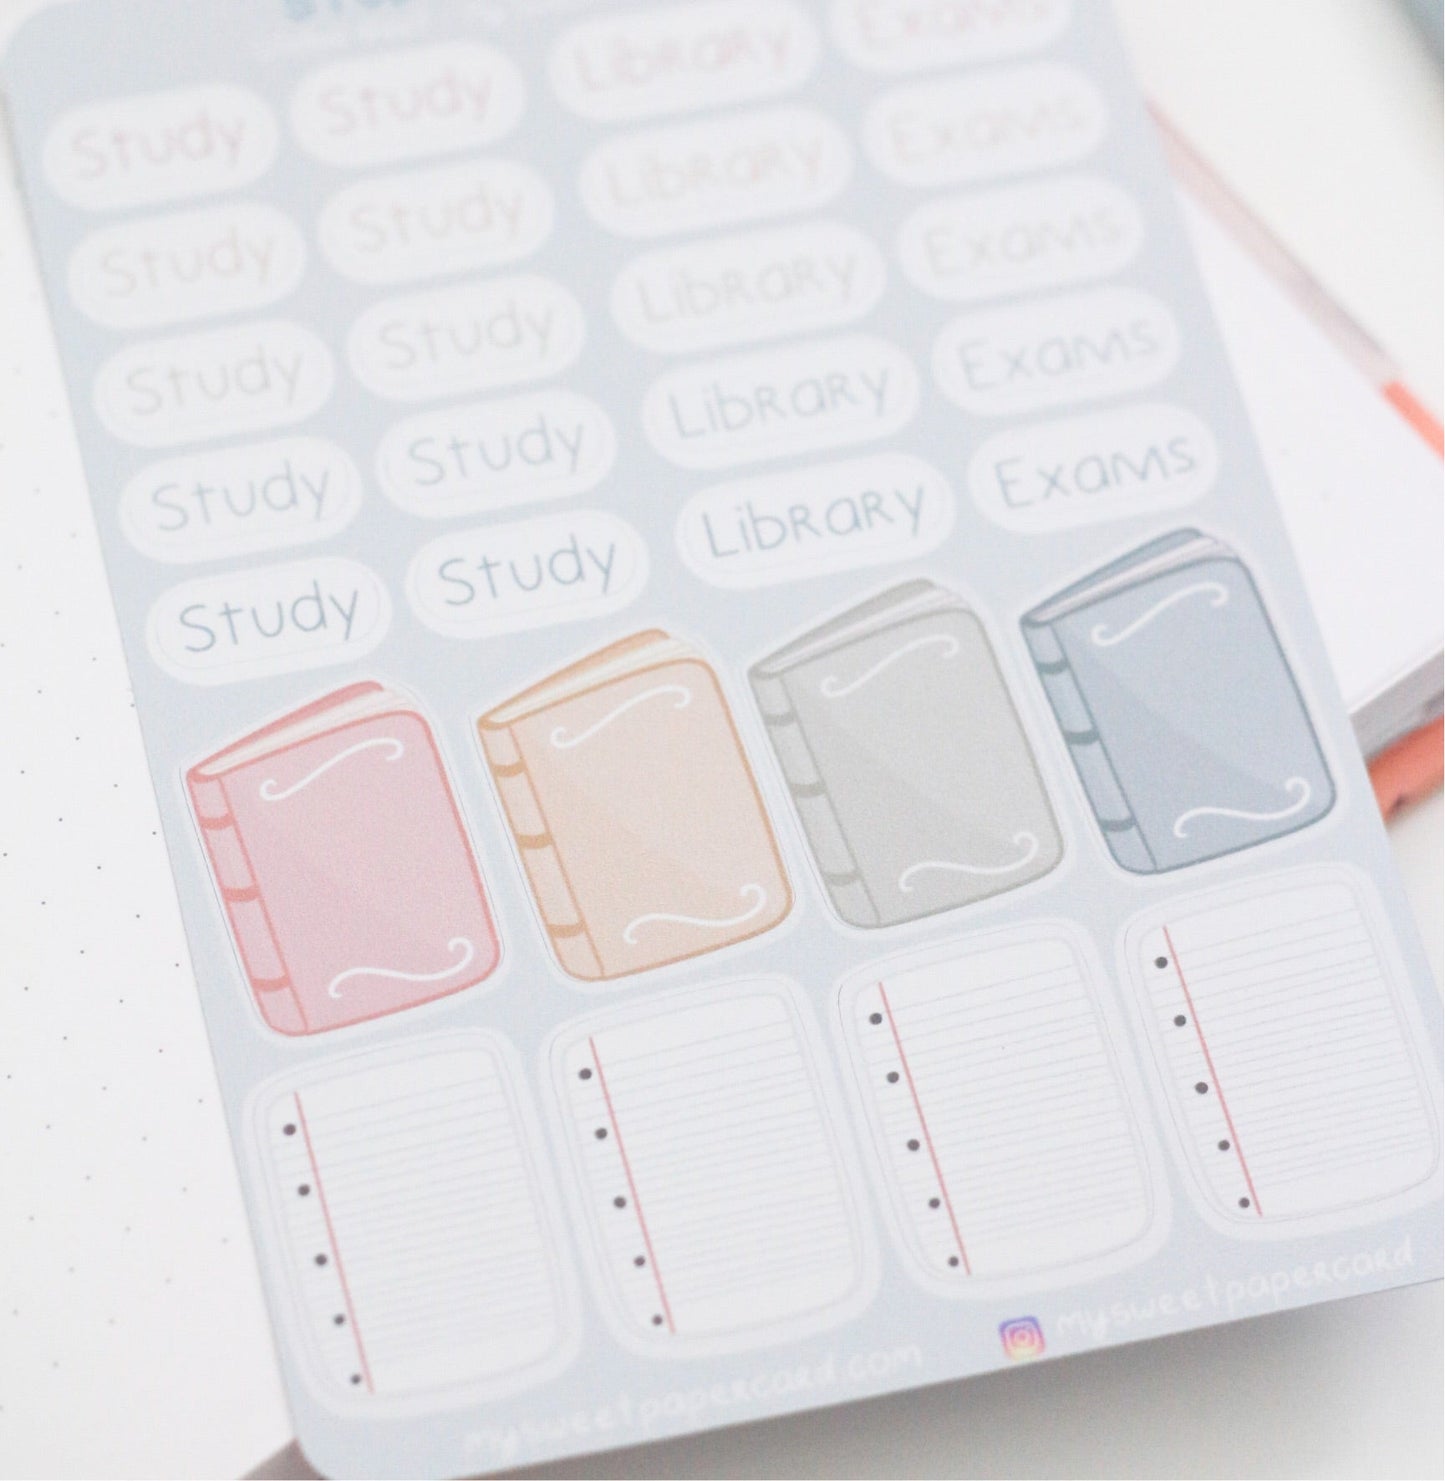 2ND SALE - Pastel school stickers - Exam planner stickers - Back to school stickers